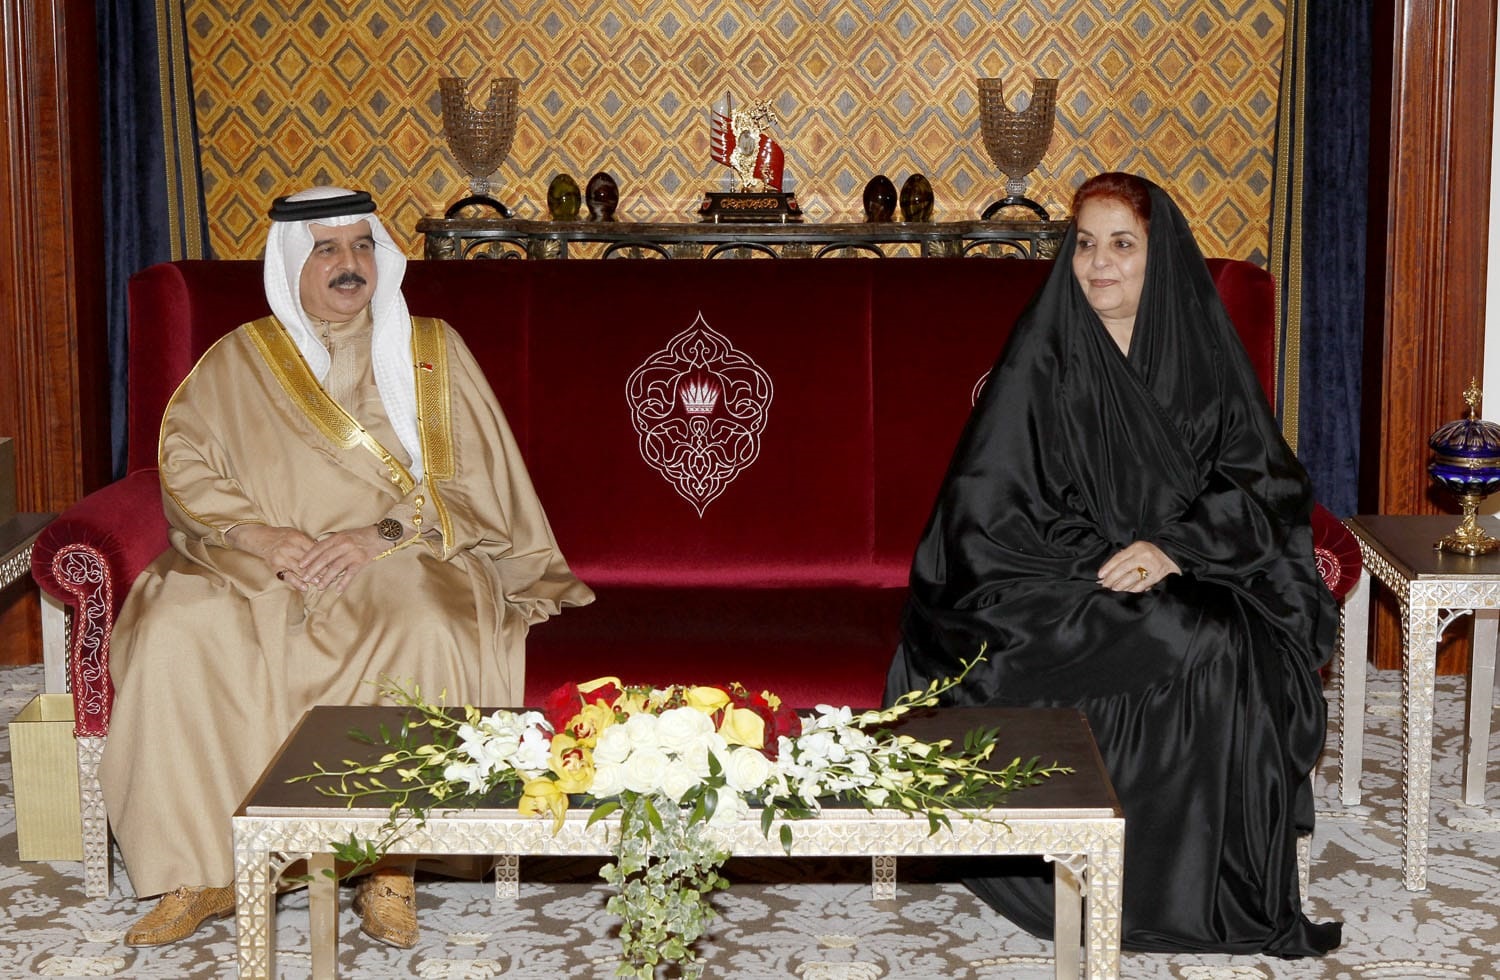 الملك حمد بن عيسى بن سلمان آل خليفة ملك مملكة البحرين مع صاحبة السمو الملكي الأميرة سبيكة بنت إبراهيم آل خليفة